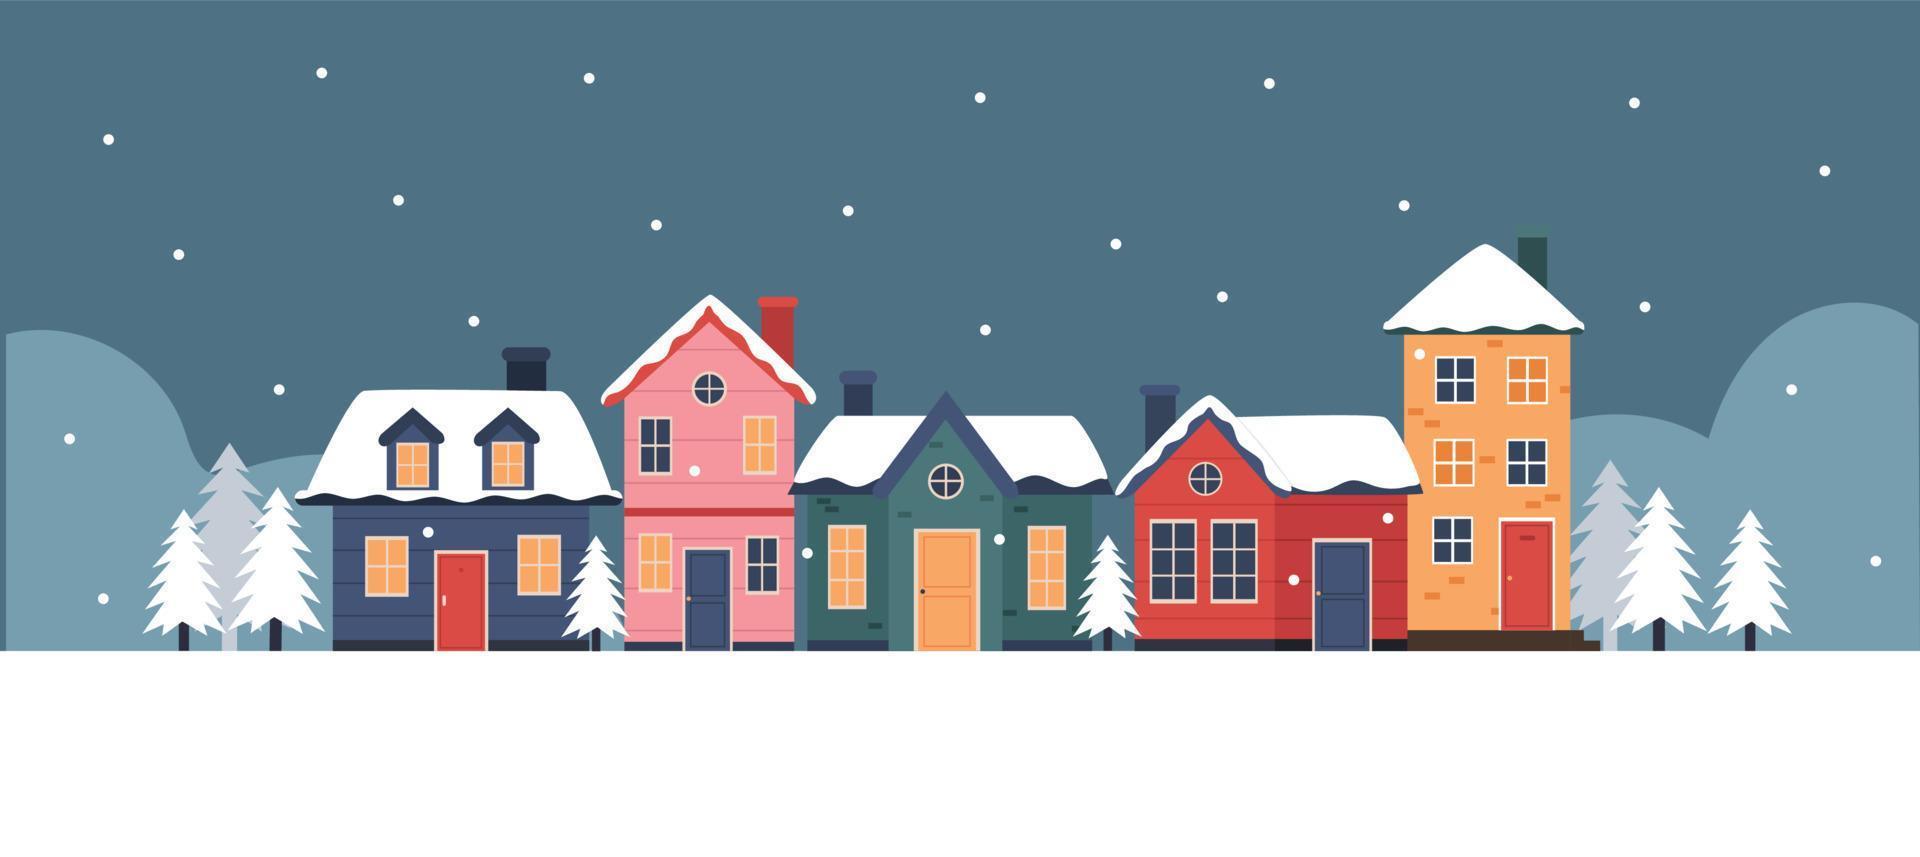 Winter town snowy neighborhood illustration vector